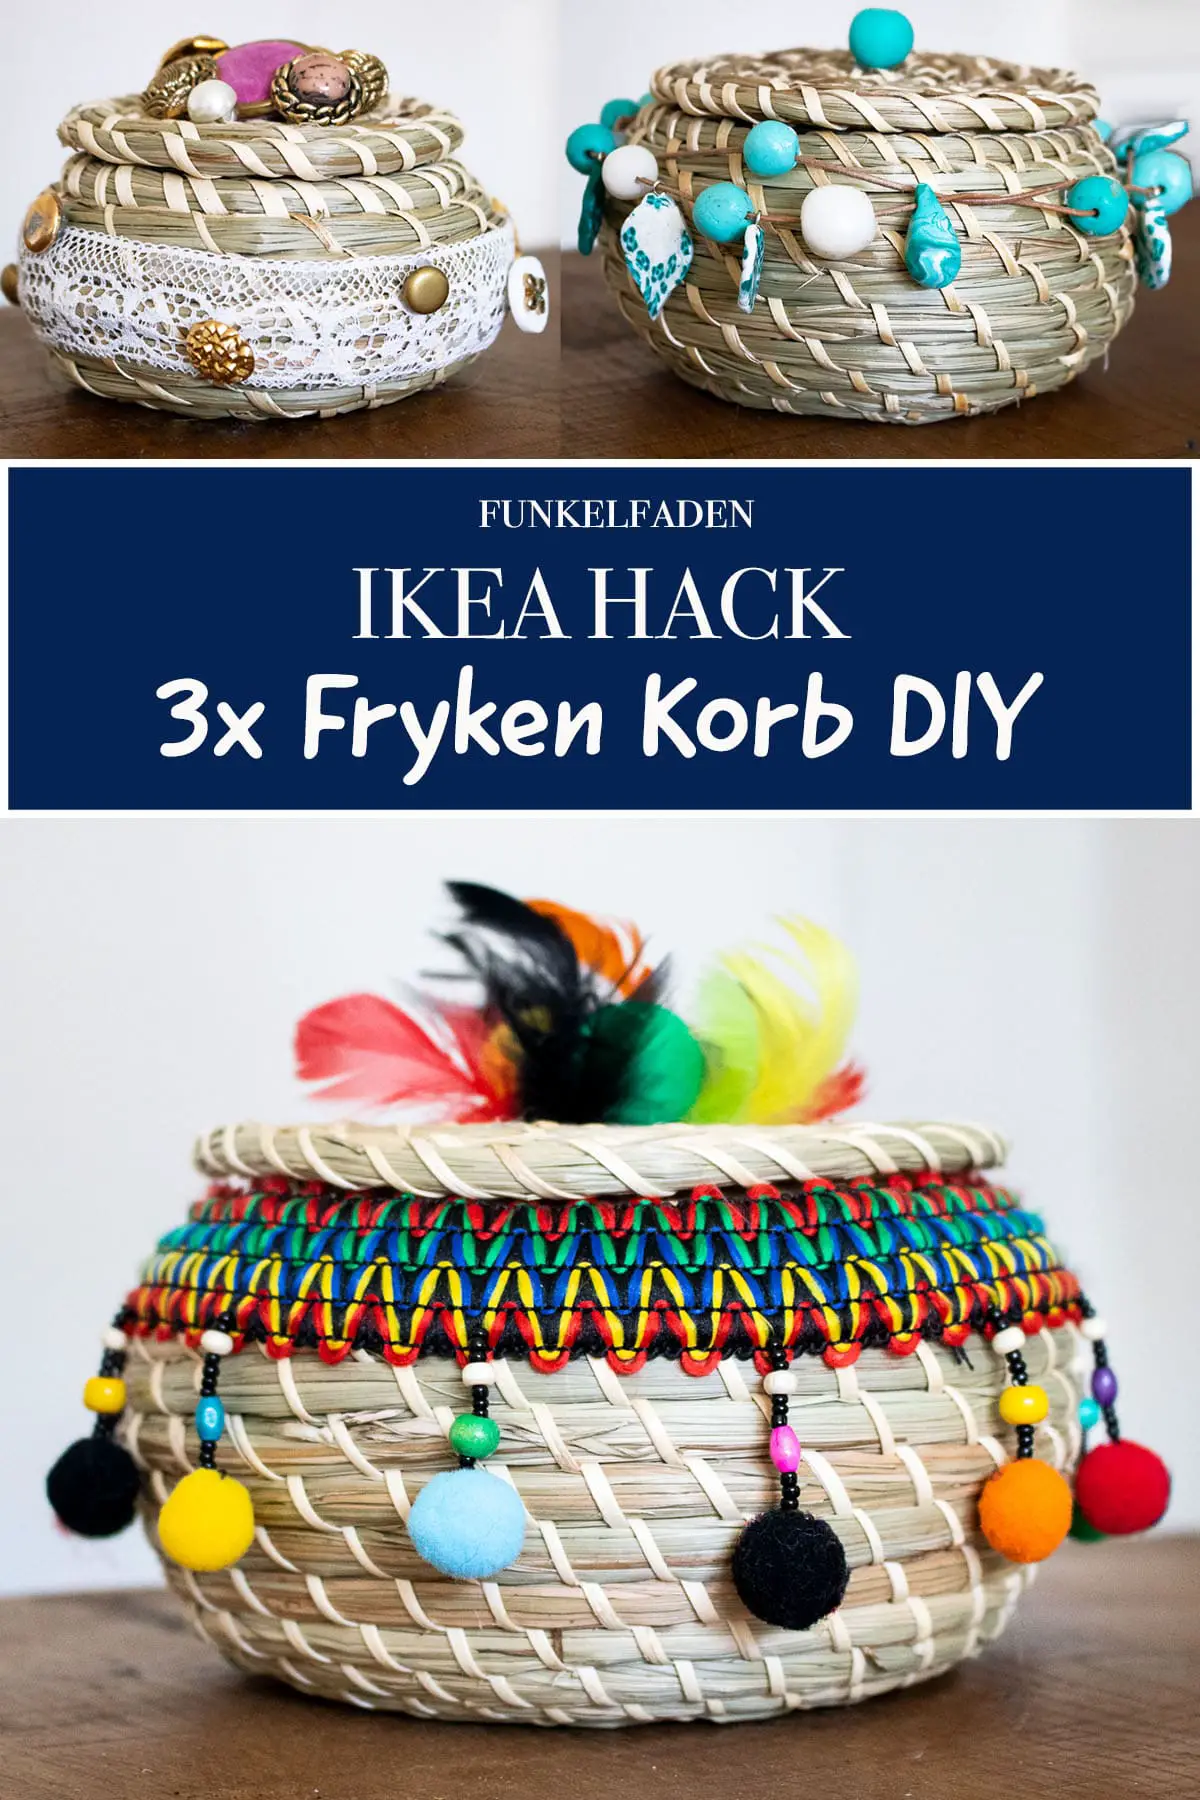 3x Fryken IKEA HACKa - Basteln mit Ikea Körben Boho Style